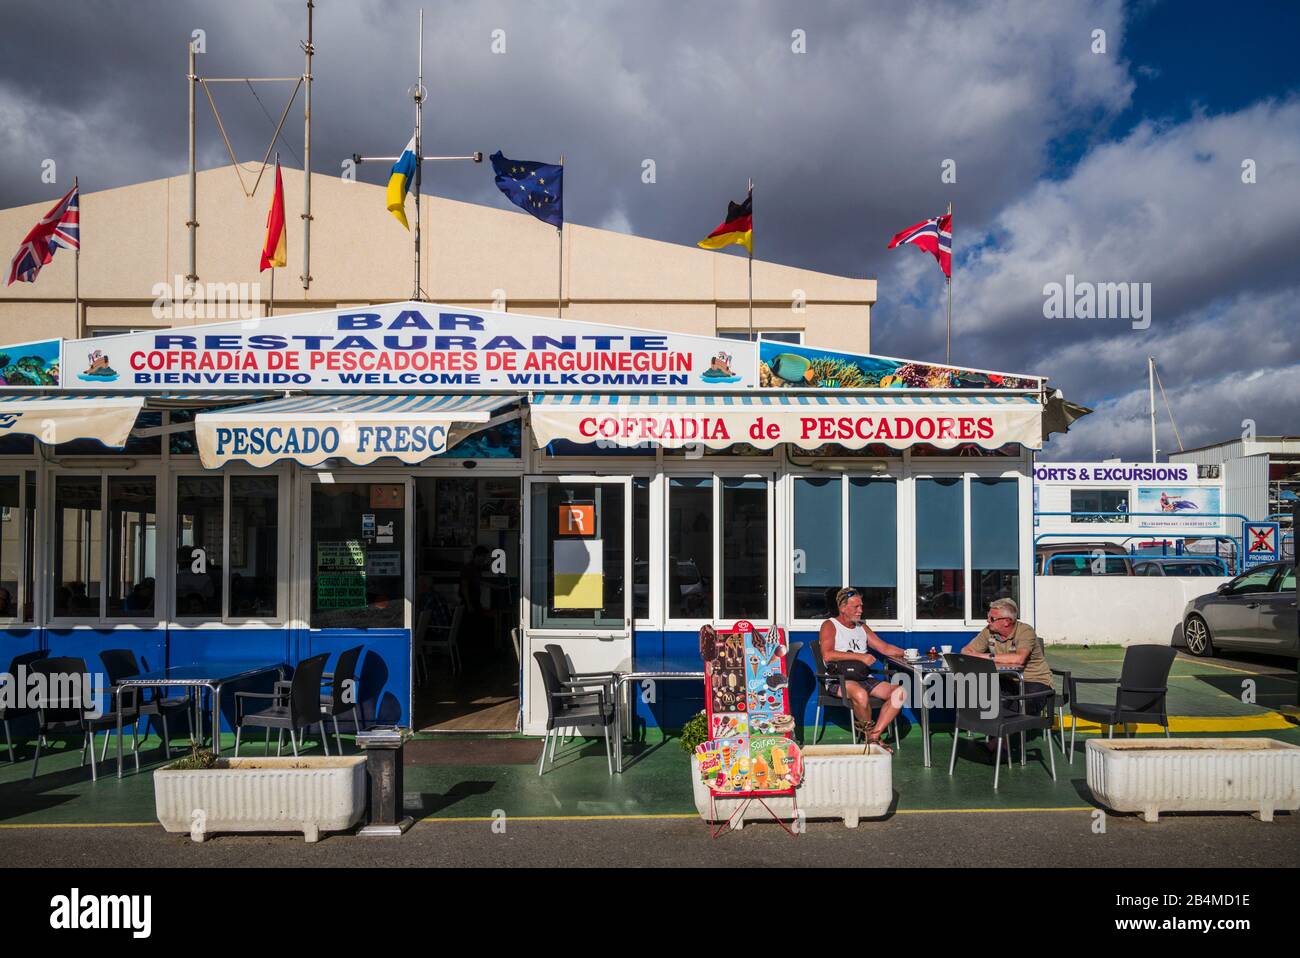 Spain, Canary Islands, Gran Canaria Island, Arguineguin, Cofradia de Pescadores, famed seafood restaurant, NR Stock Photo